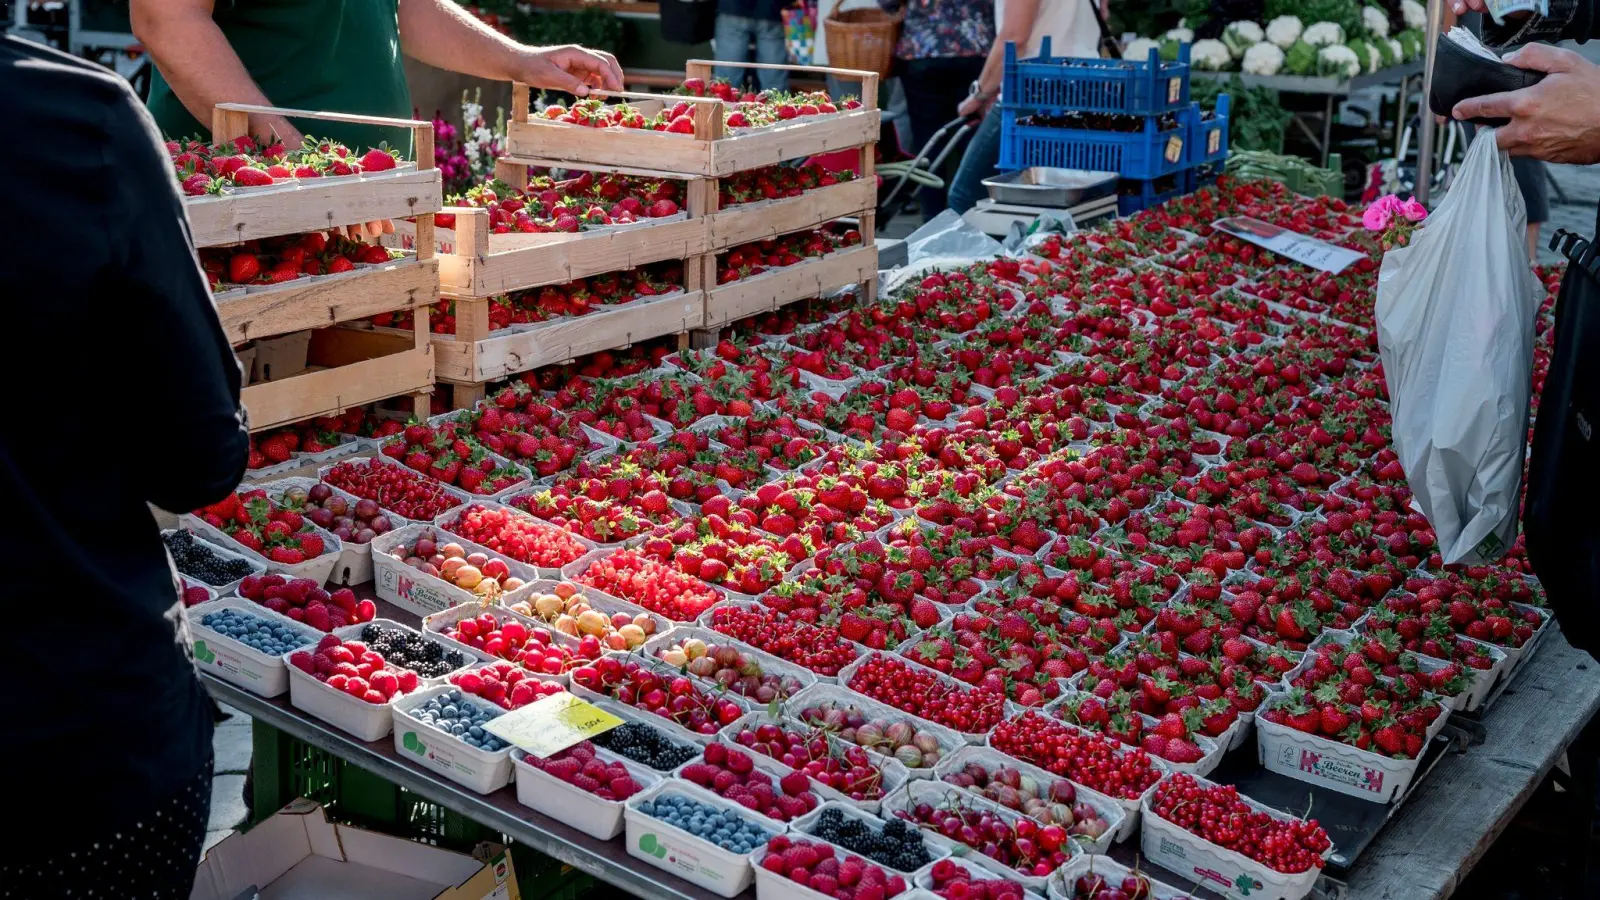 Mancherorts werden die ersten heimischen Erdbeeren der Saison angeboten. Die frühe Ernte stammt jedoch aus Folientunneln. (Foto: Daniel Vogl/dpa)